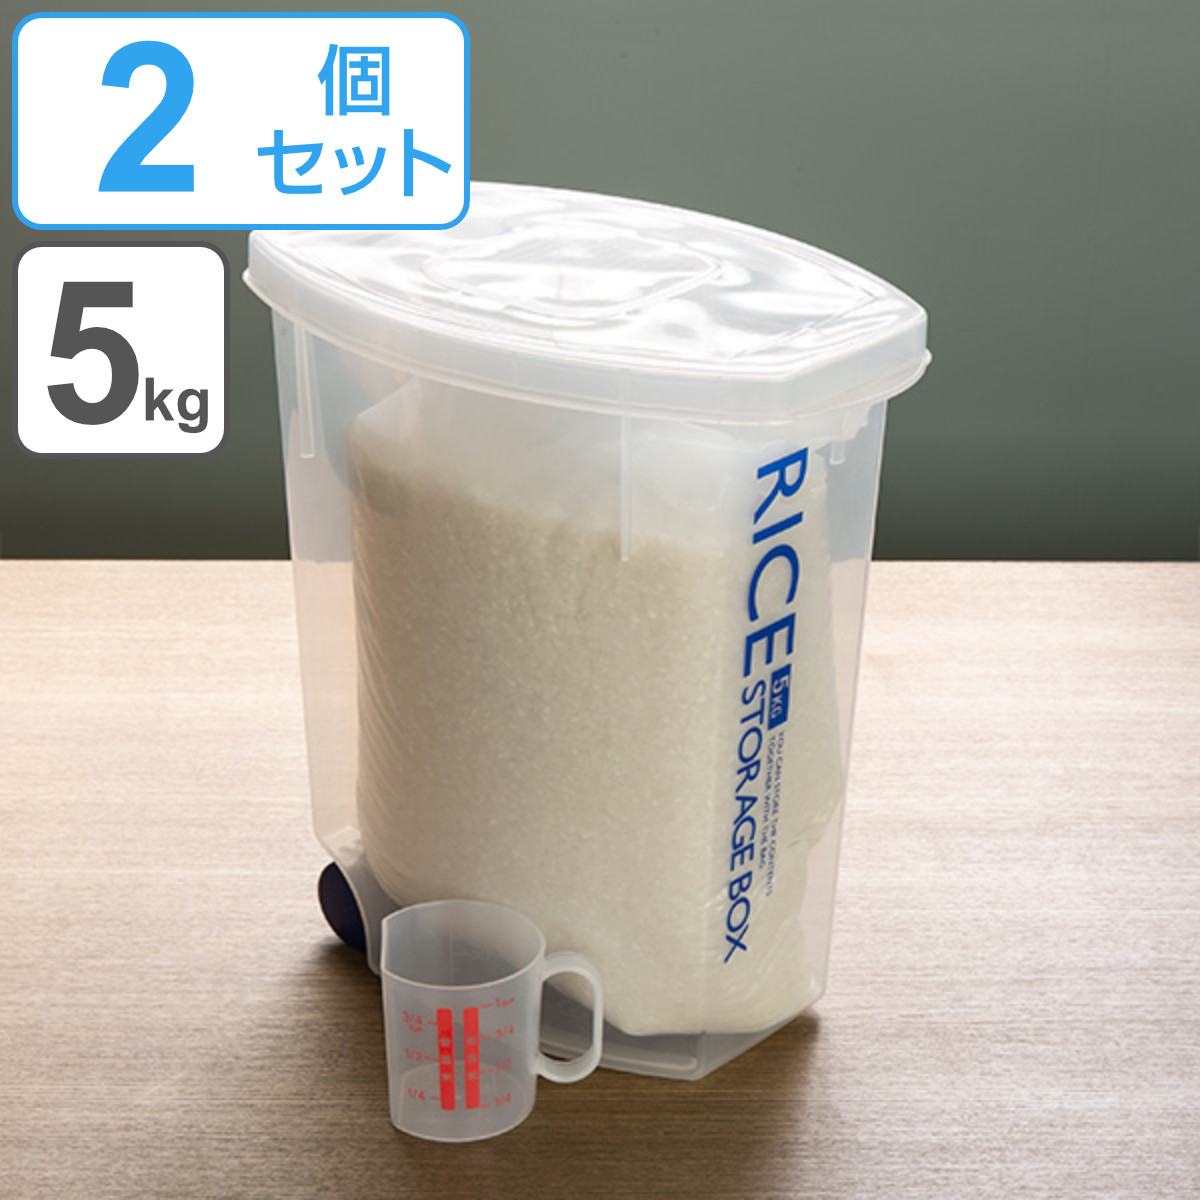 米びつ 袋のまんま防虫米びつ 5kg 計量カップ付 防虫剤付き 2個セット